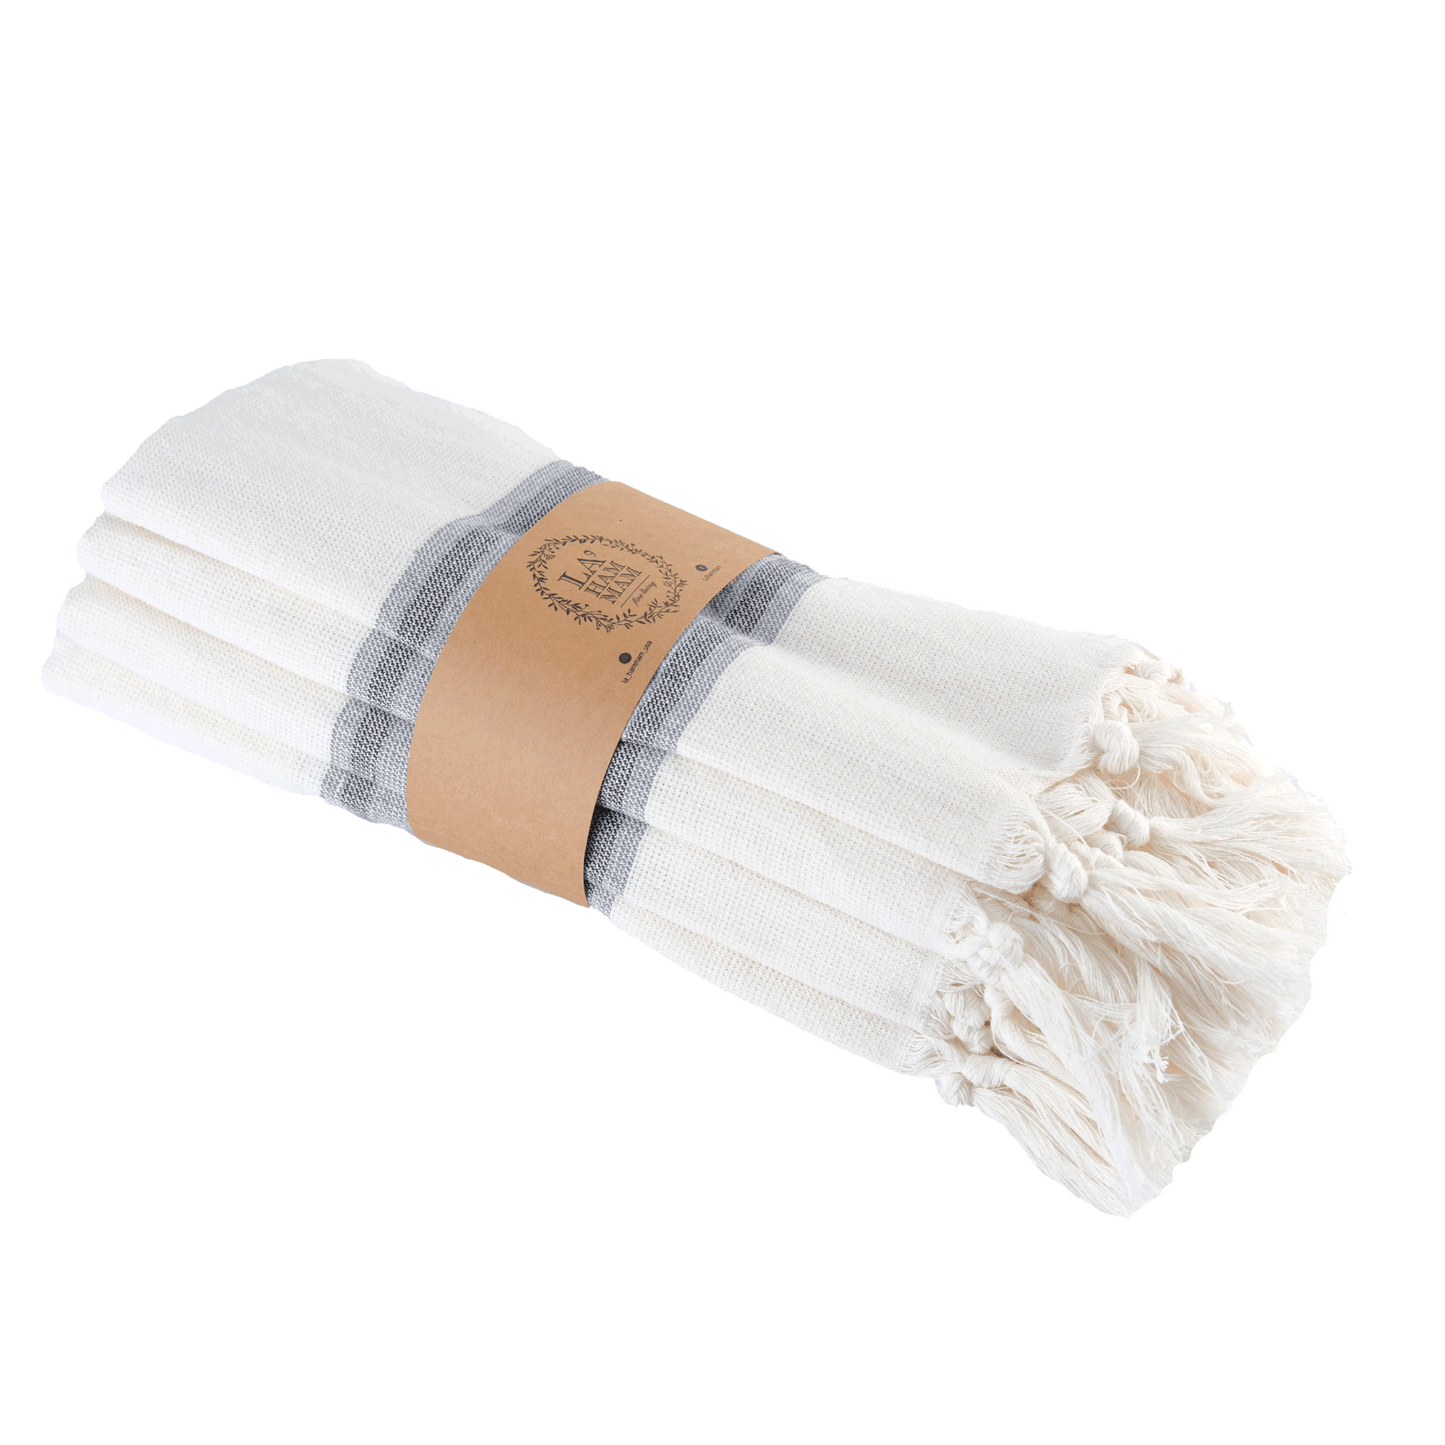 Smyrna Turkish Hand / Kitchen Towel 4 pack